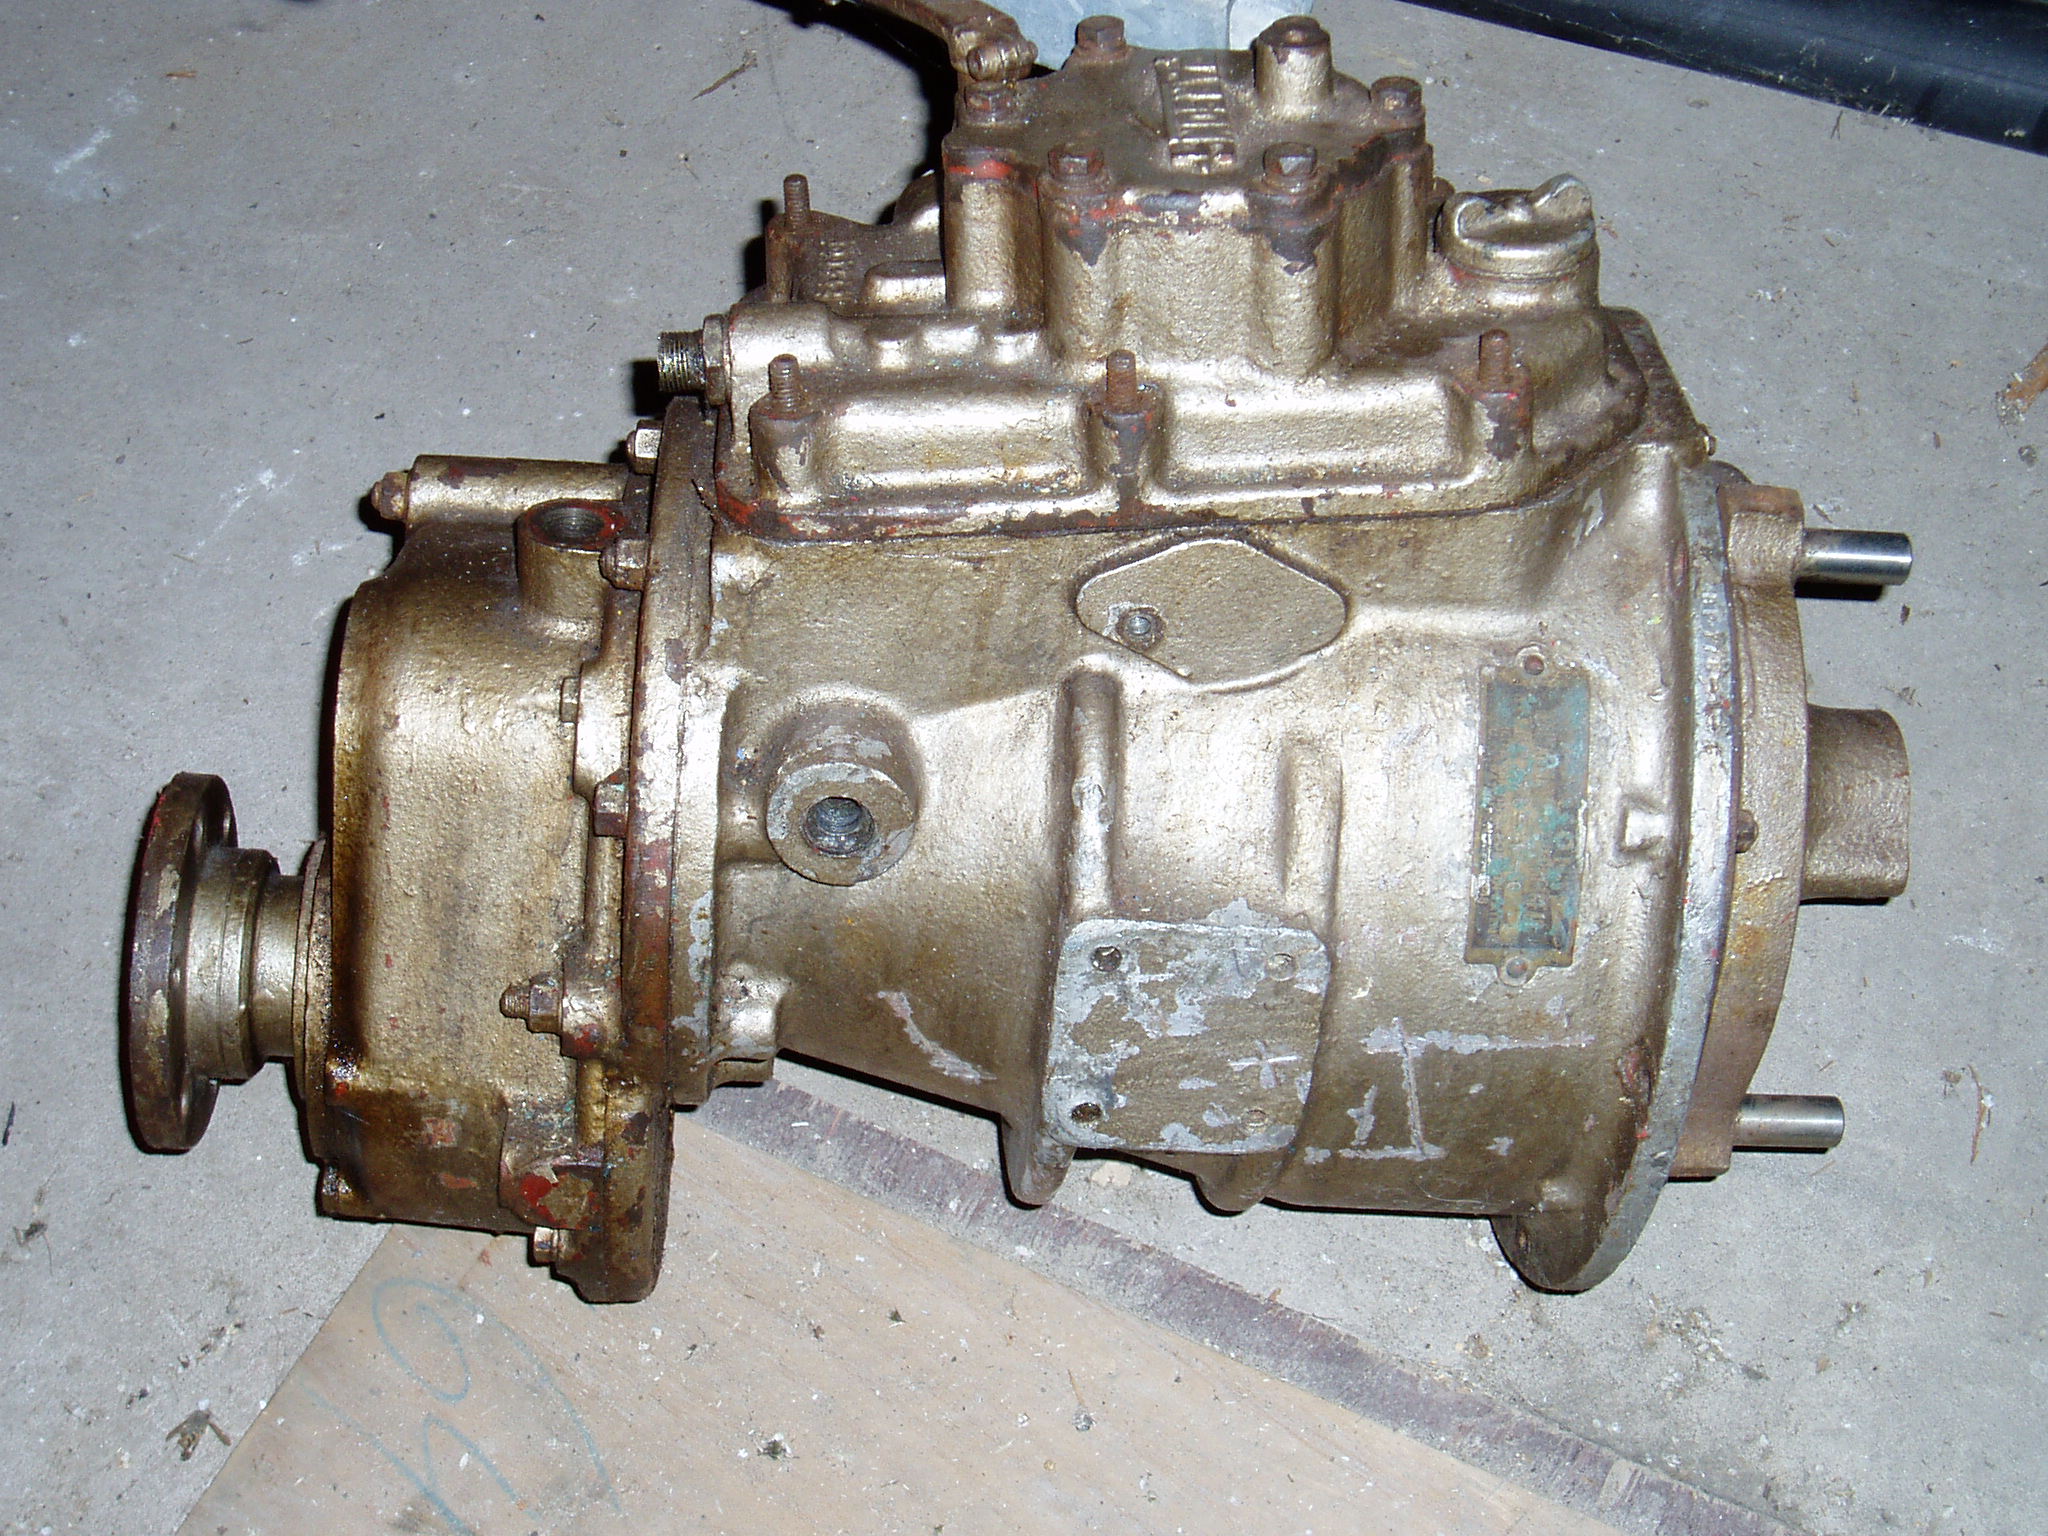 Parsons type DA gearbox